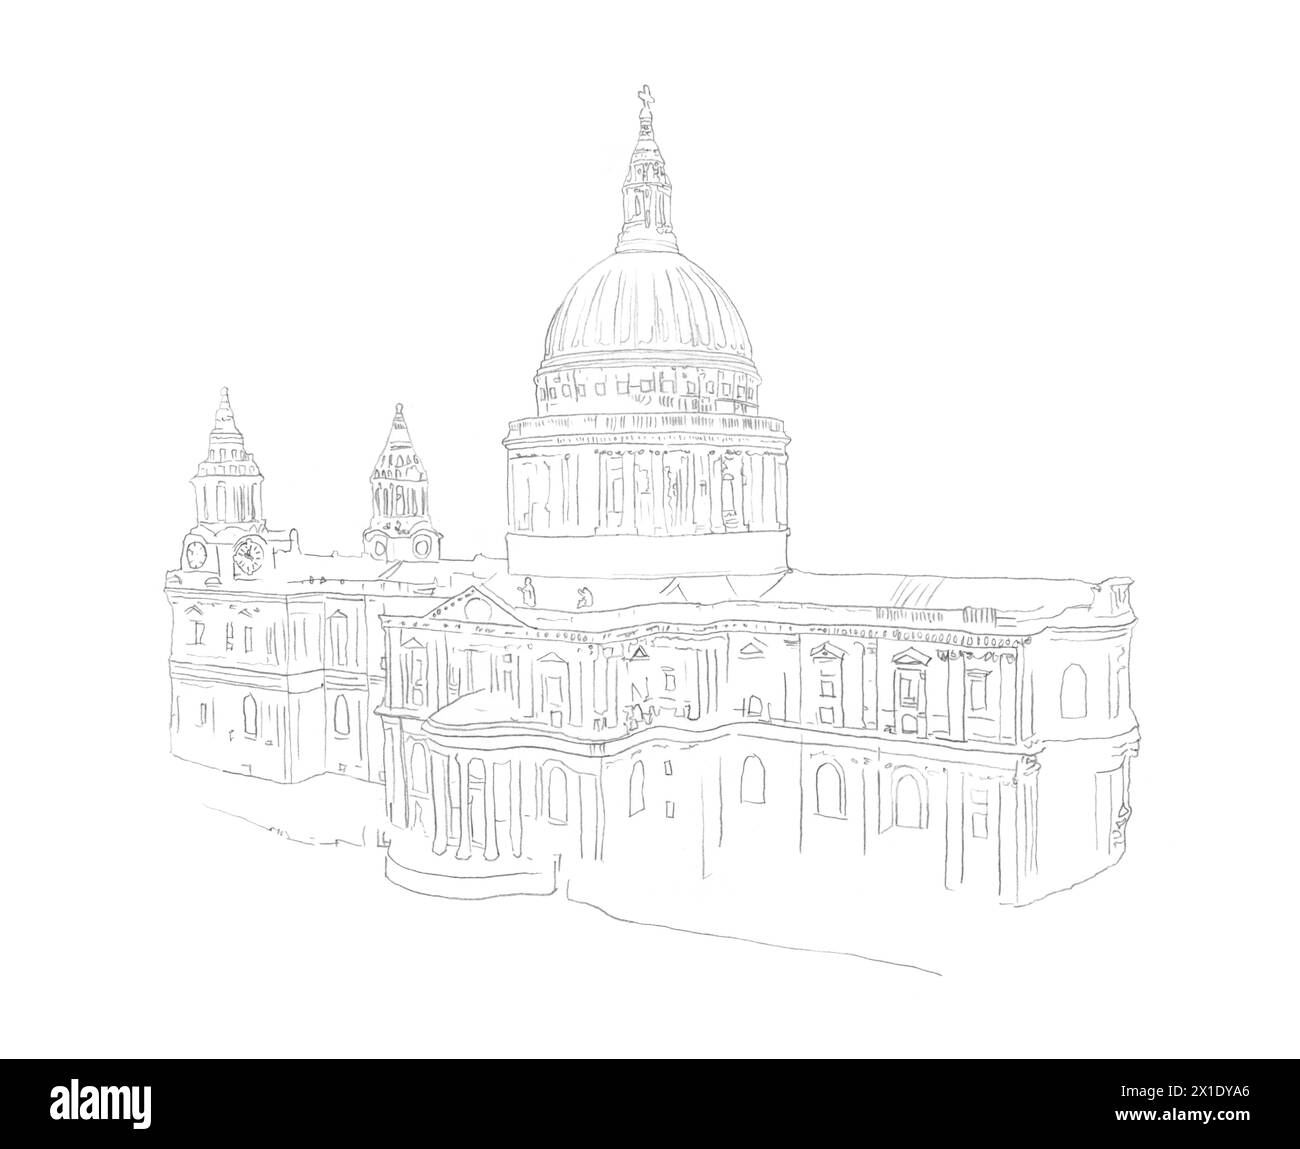 Croquis de dessin au crayon architectural du bâtiment de la cathédrale Saint-Paul à Londres, Royaume-Uni Banque D'Images